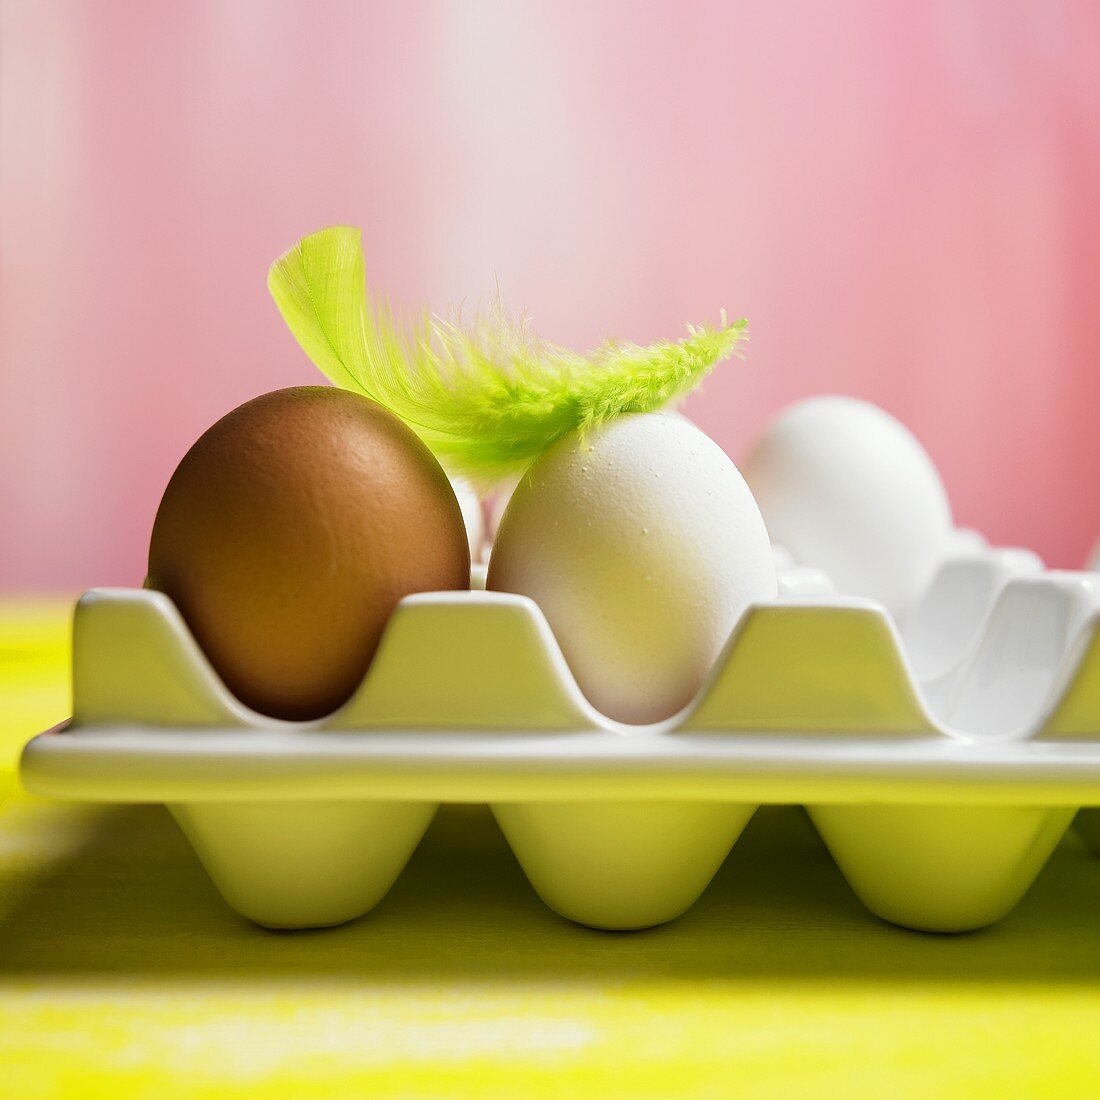 Eier auf einer Palette mit einer grünen Feder